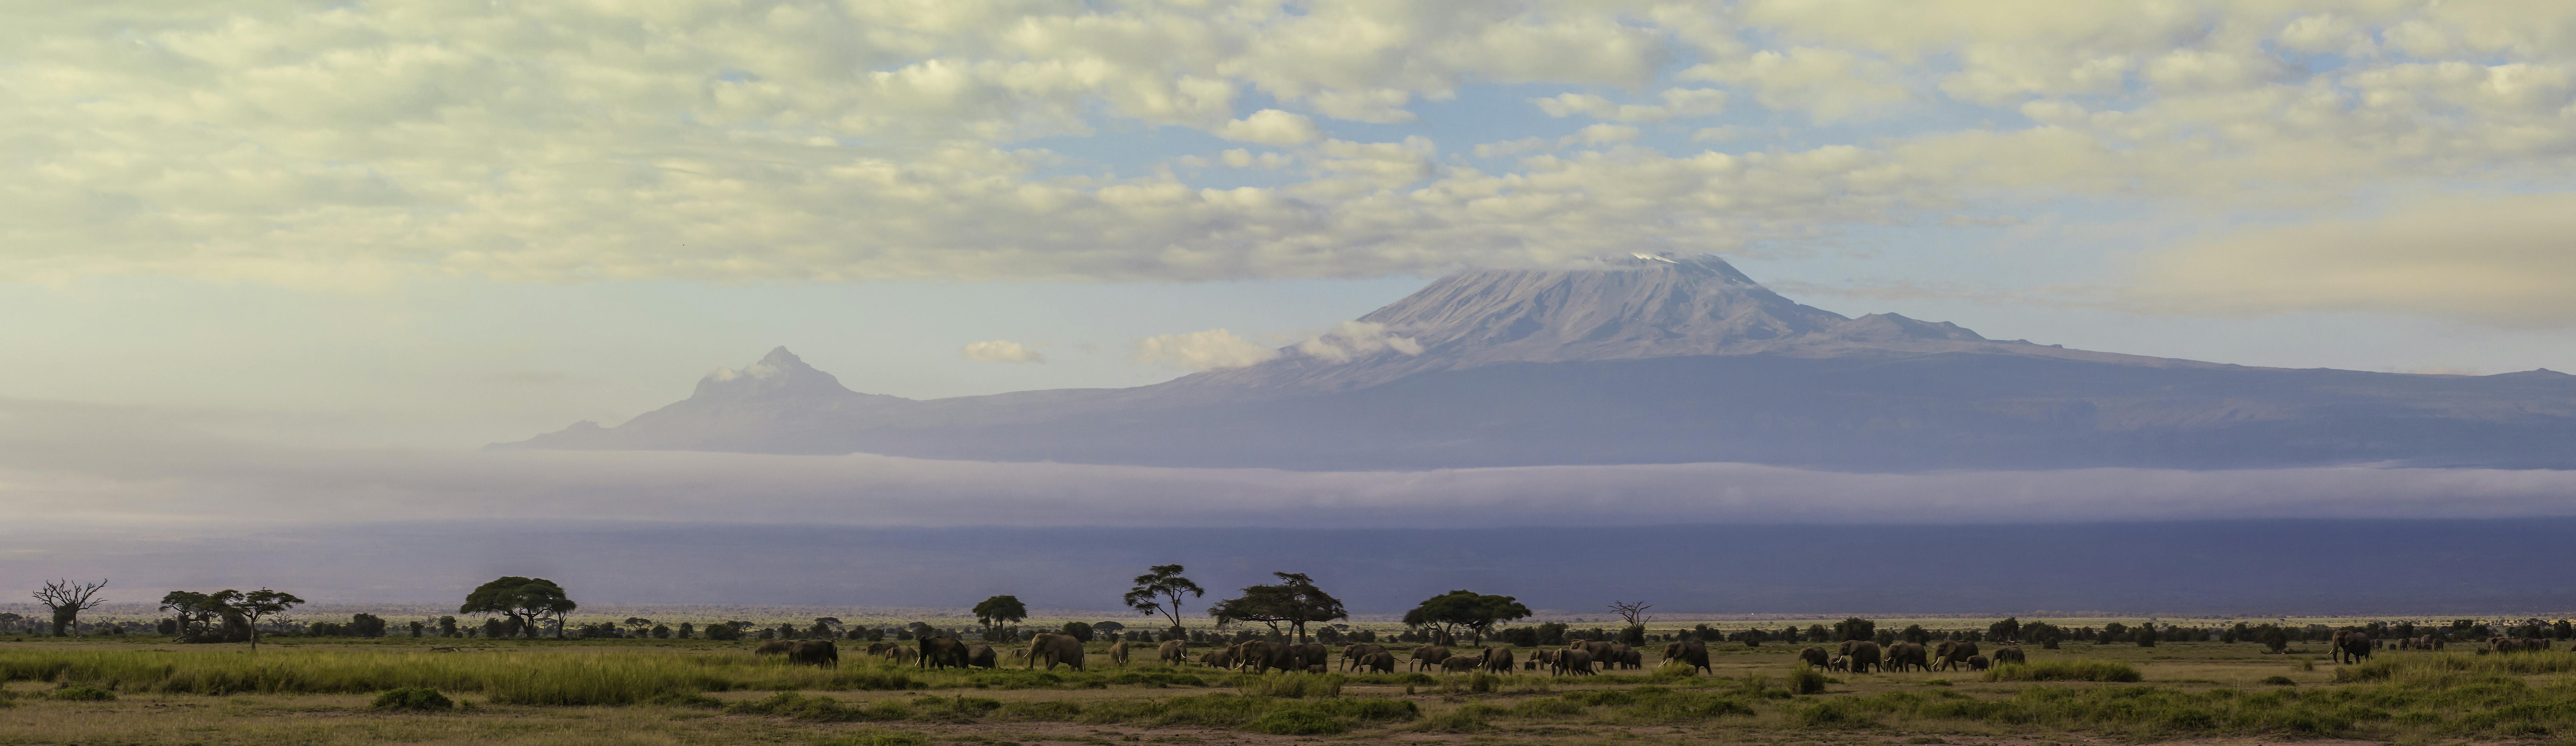 Escursione di un giorno sul Monte Kilimanjaro da Arusha